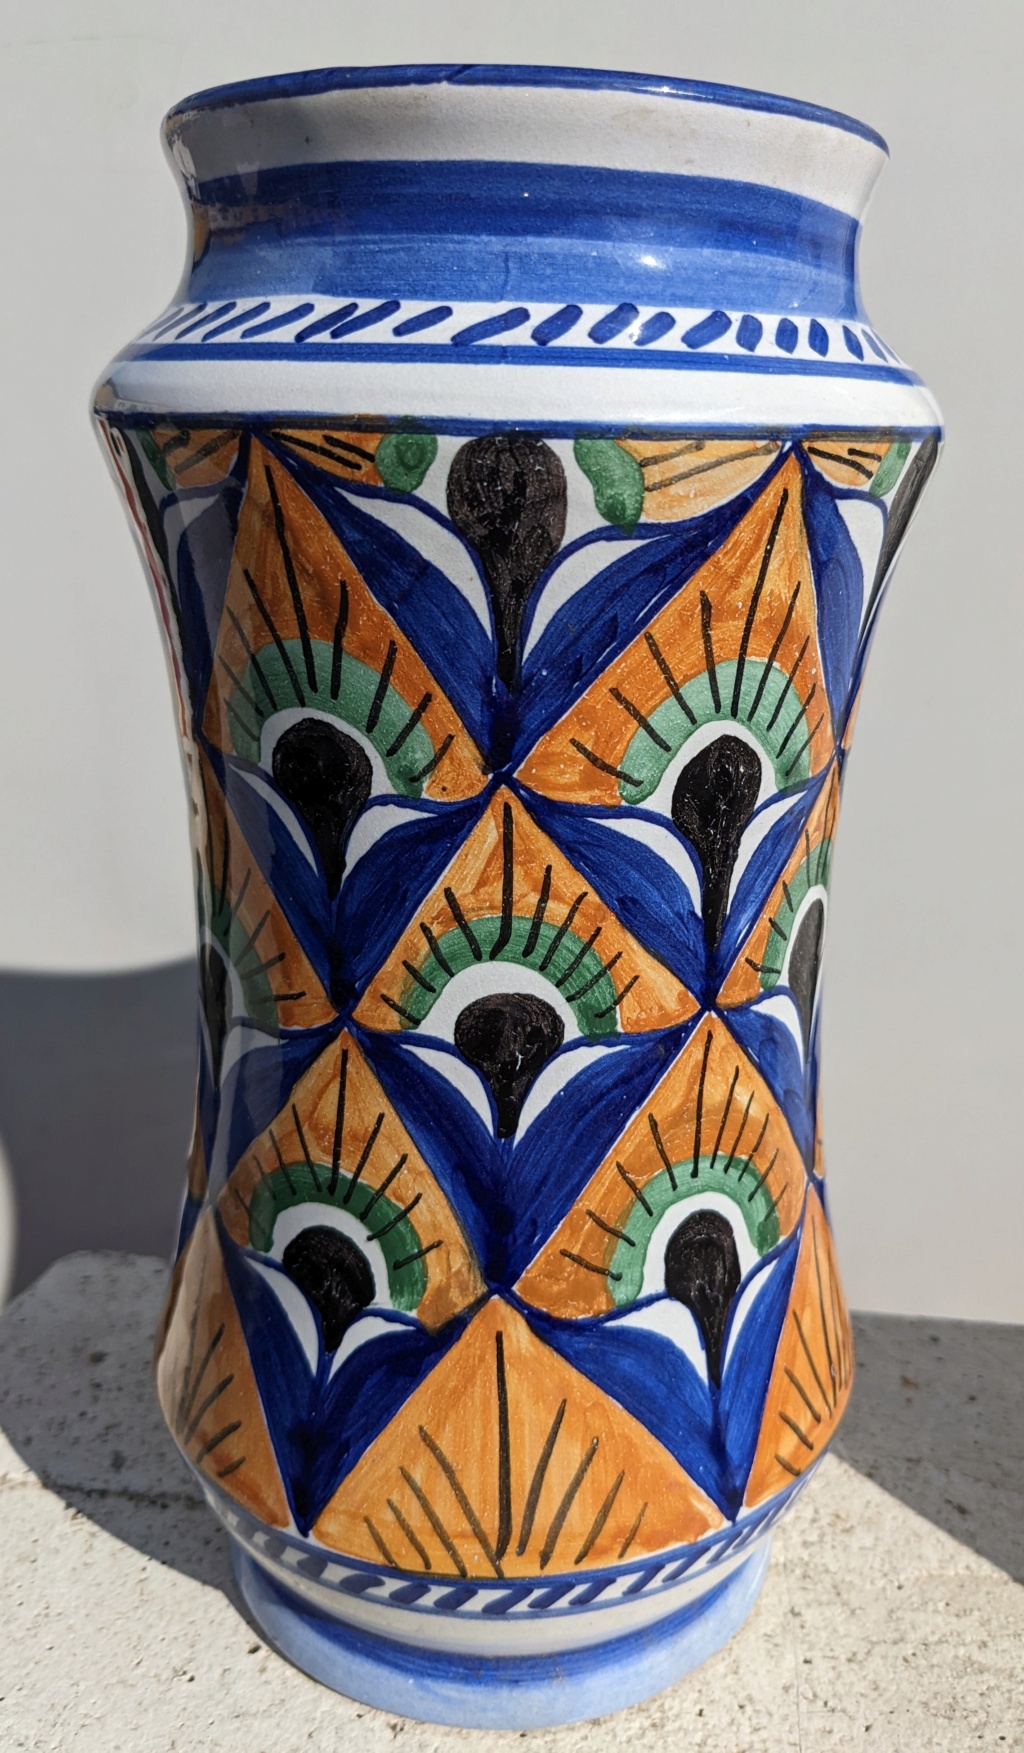 grand vase fabricant inconnu type Albarello marqué d'un L en bleu à identifier Mexique ? Espagne ? Pxl_2146